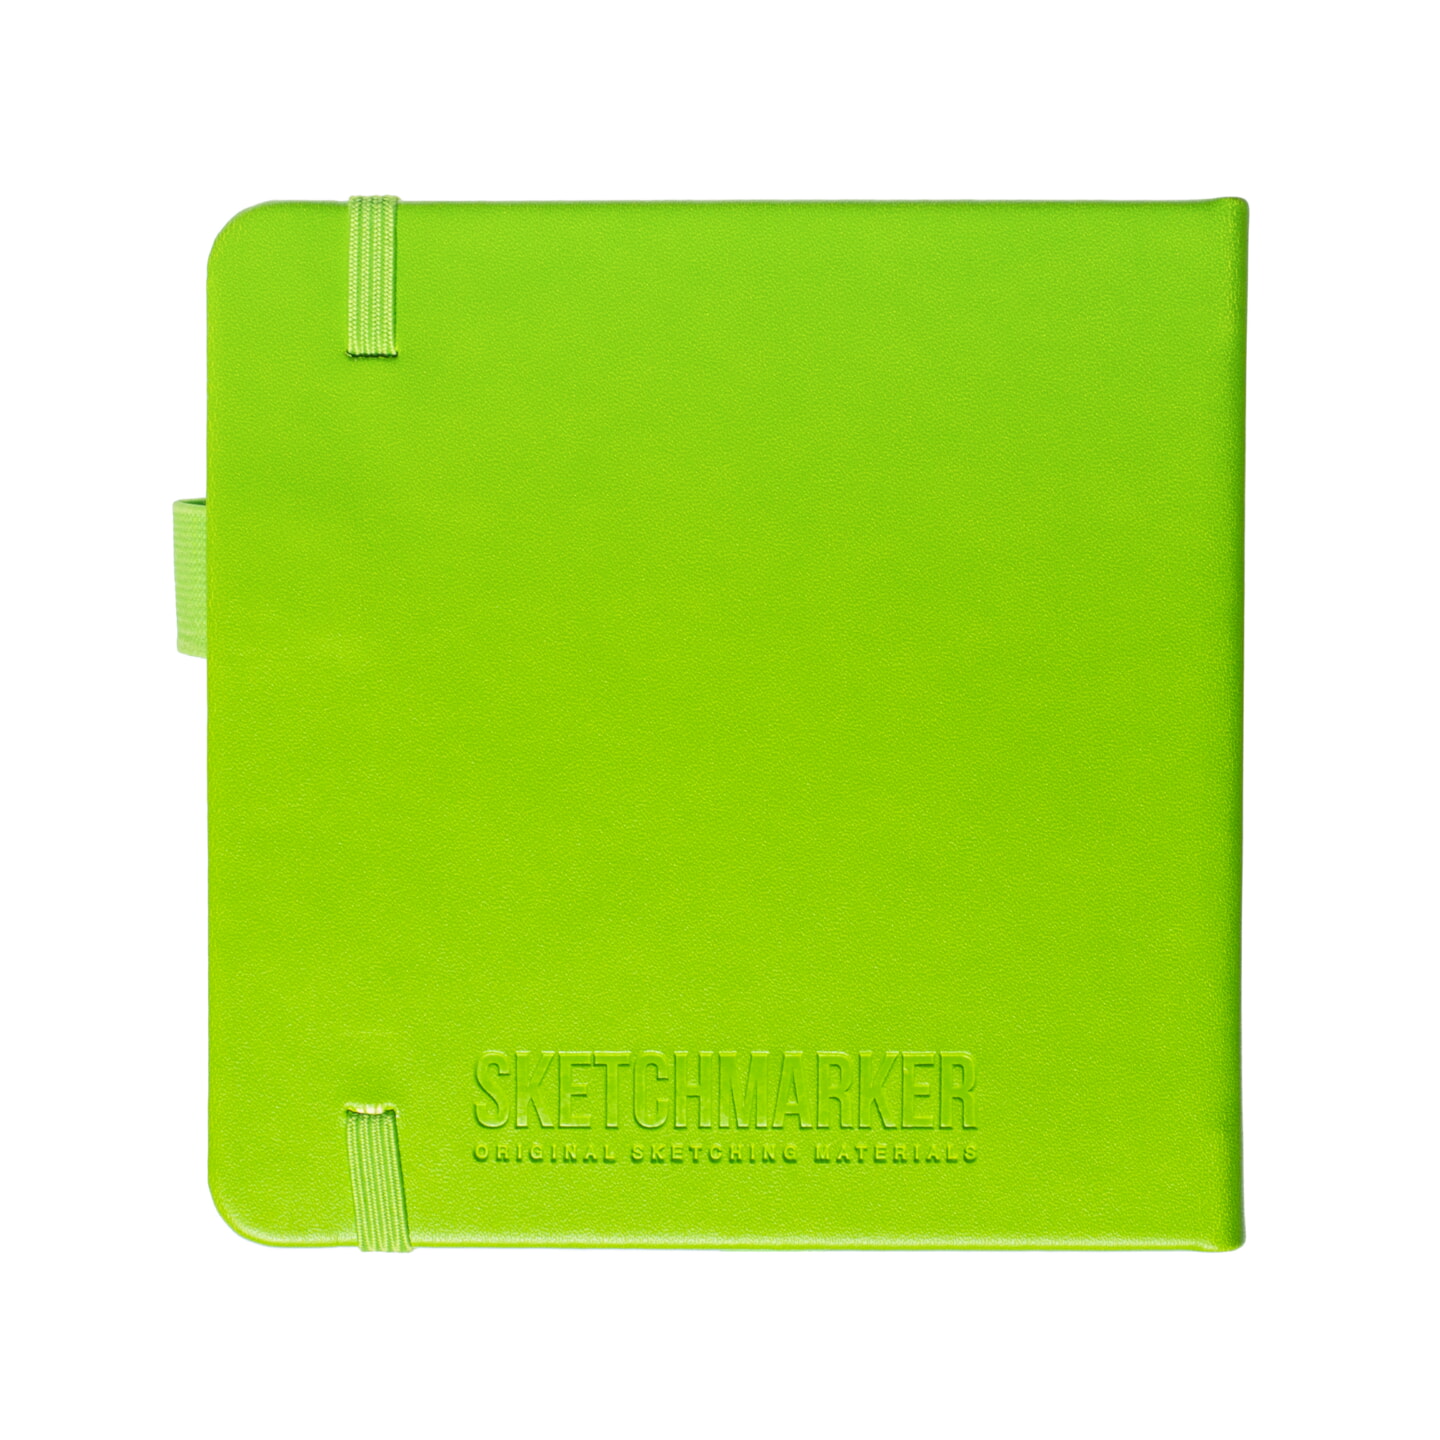 Блокнот для зарисовок Sketchmarker 140г/кв.м 12*12см 80л твердая обложка Зеленый луг